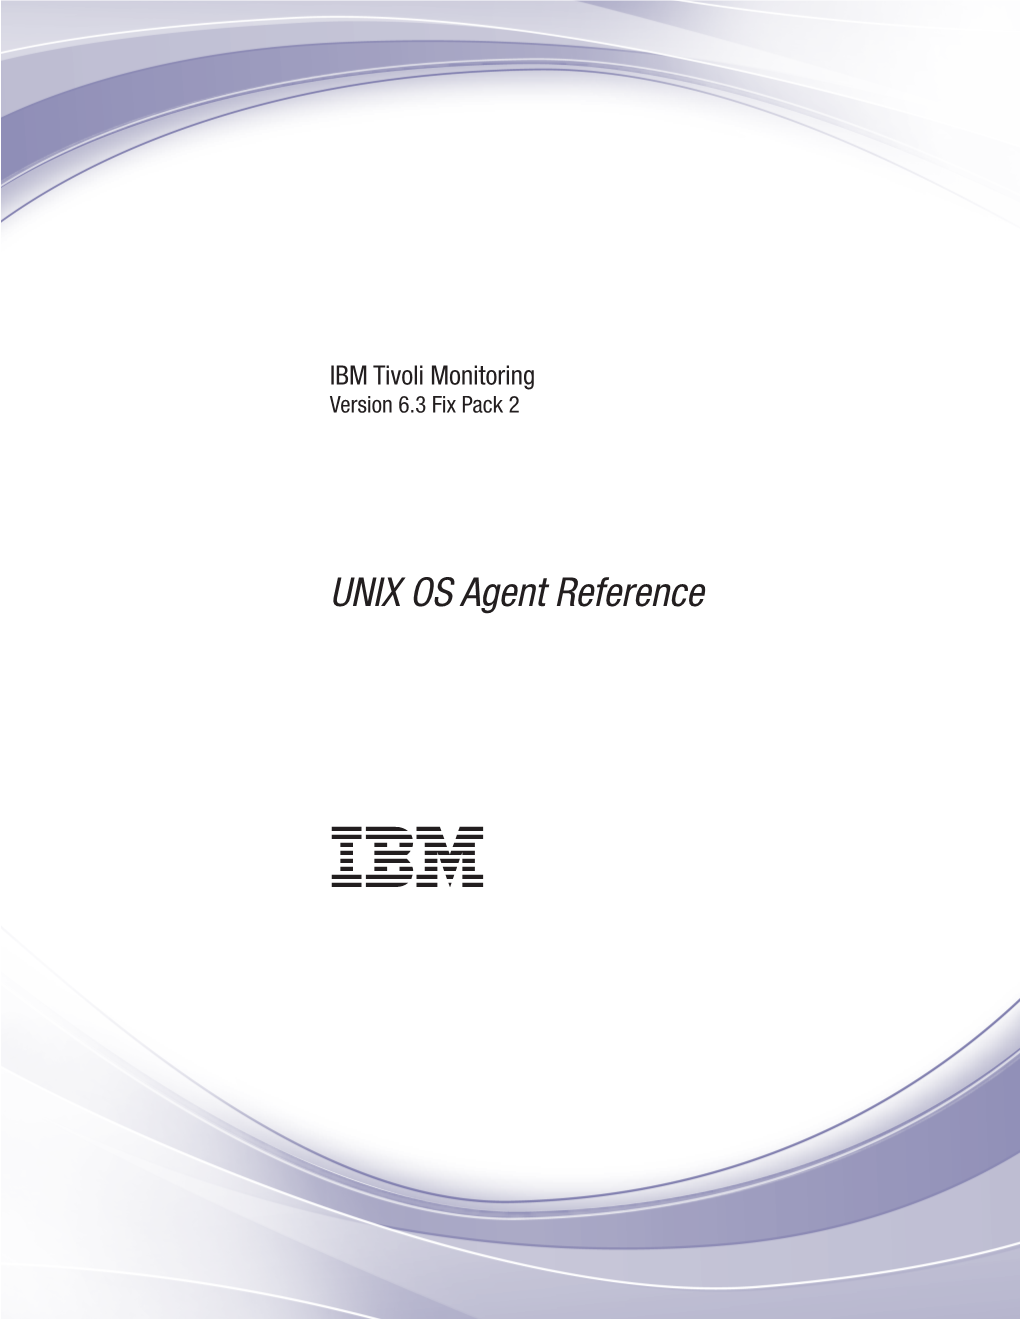 IBM Tivoli Monitoring: UNIX OS Agent Reference UNIXPVOLUM Historical Table